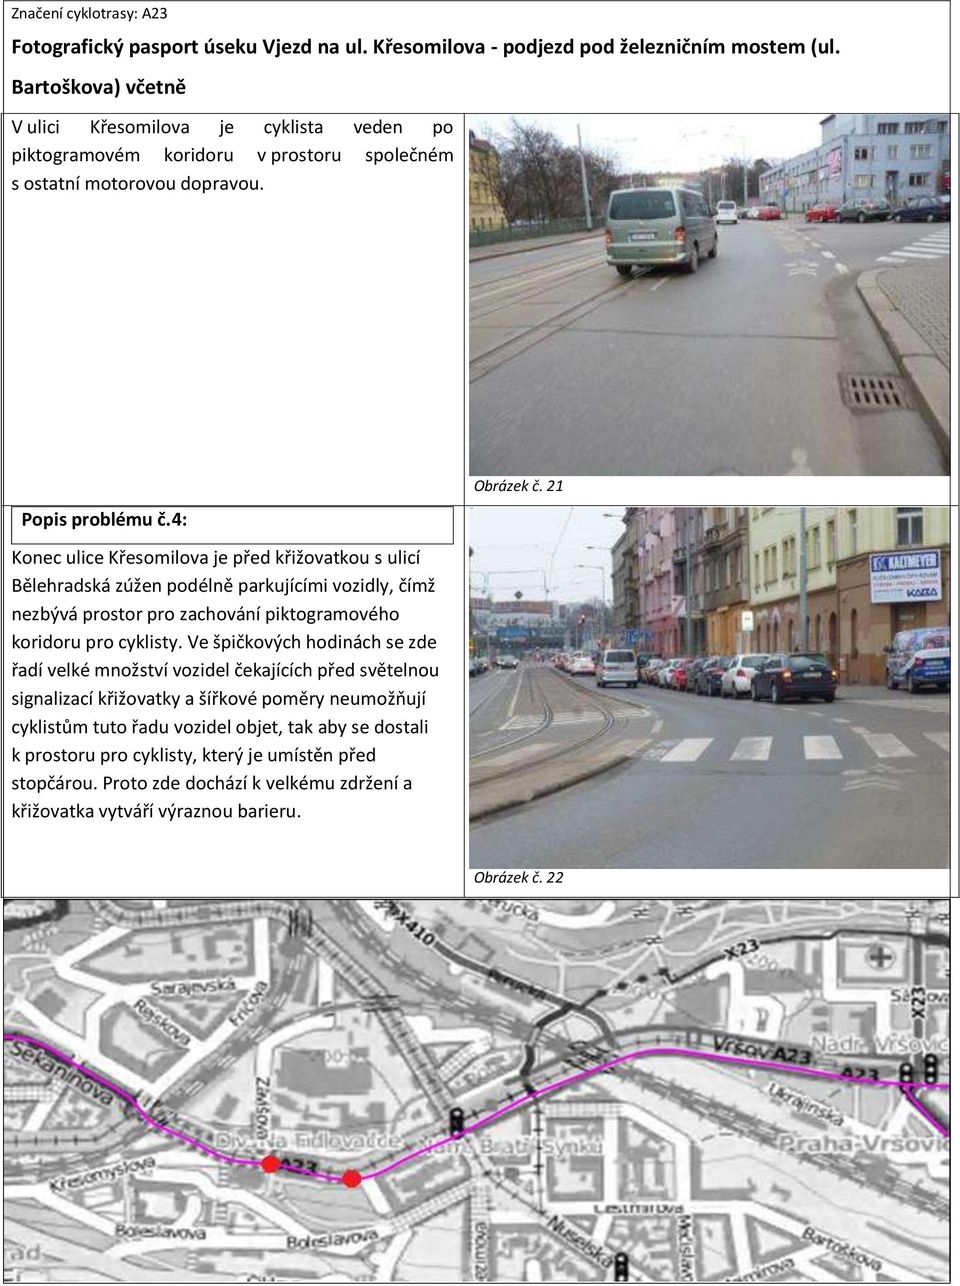 4: Konec ulice Křesomilova je před křižovatkou s ulicí Bělehradská zúžen podélně parkujícími vozidly, čímž nezbývá prostor pro zachování piktogramového koridoru pro cyklisty.